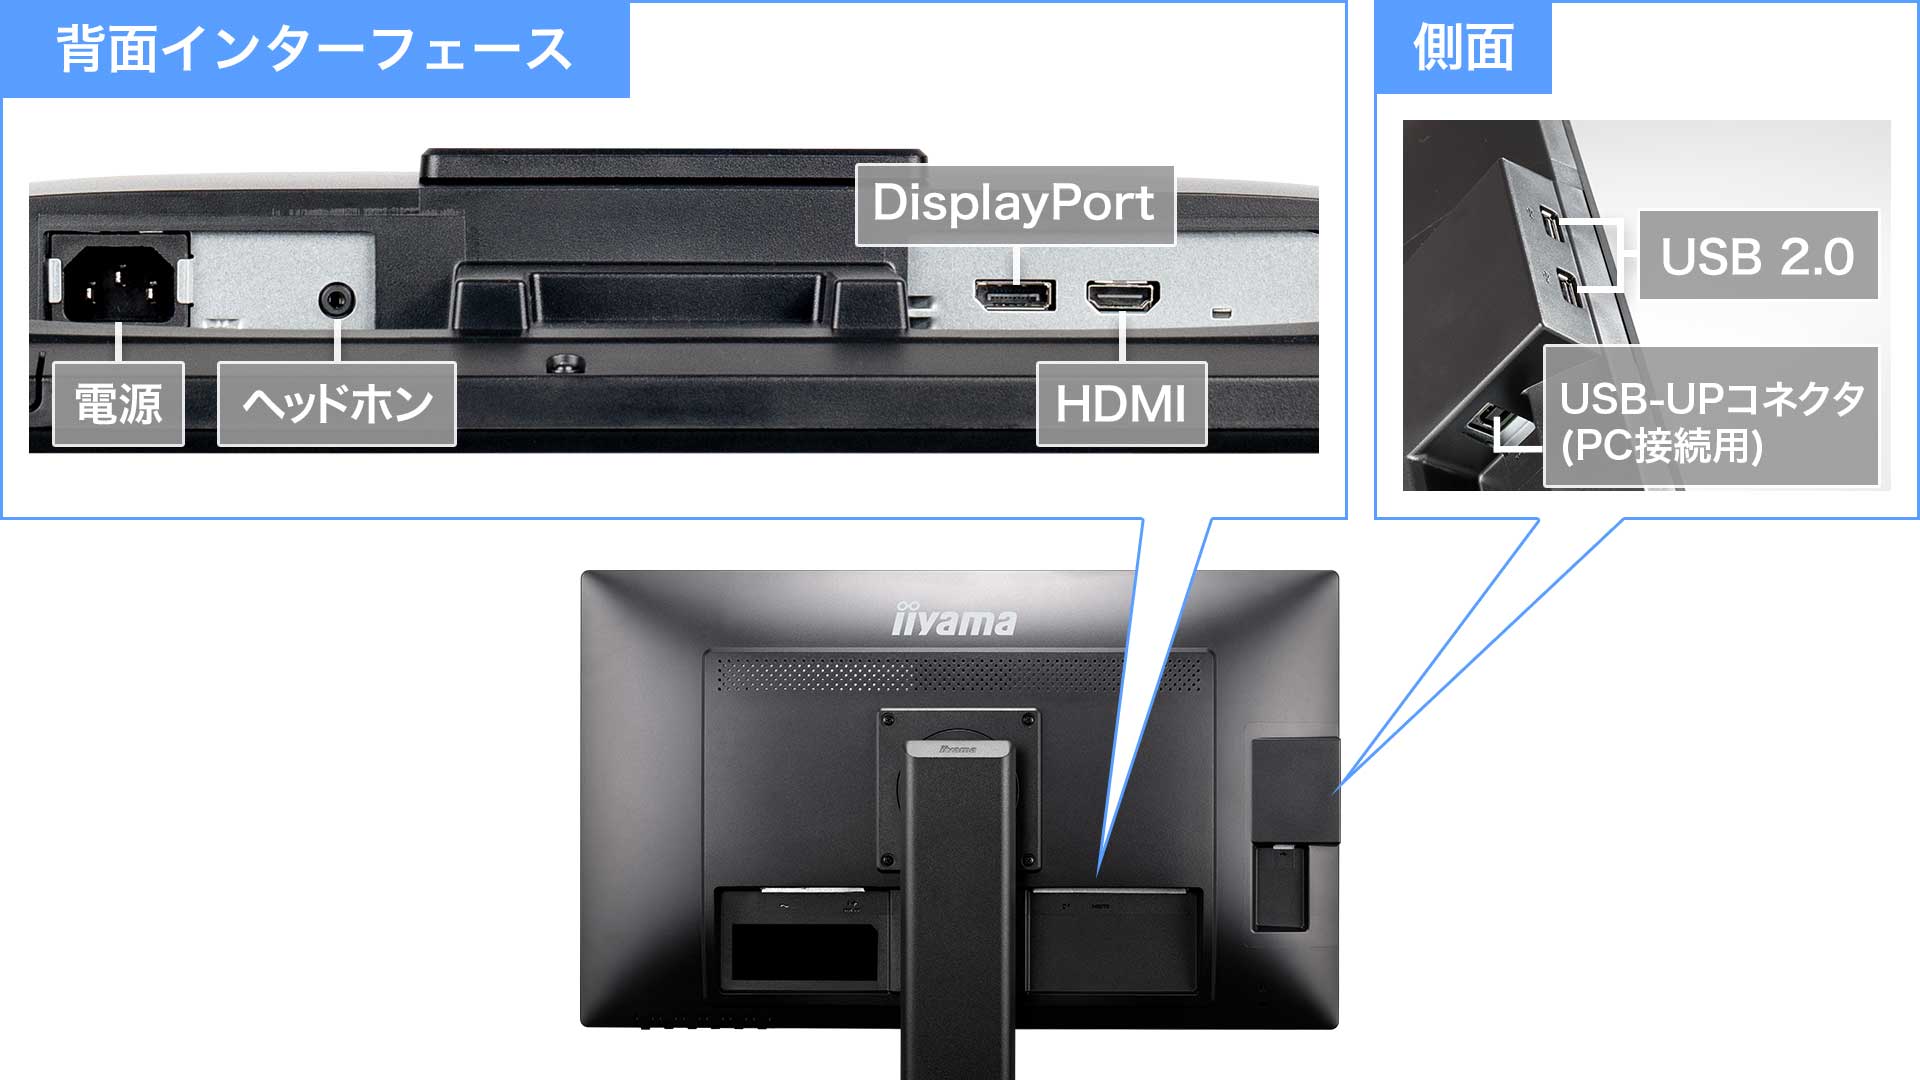 DisplayPort、HDMI、D-Subの映像入力3系統に対応